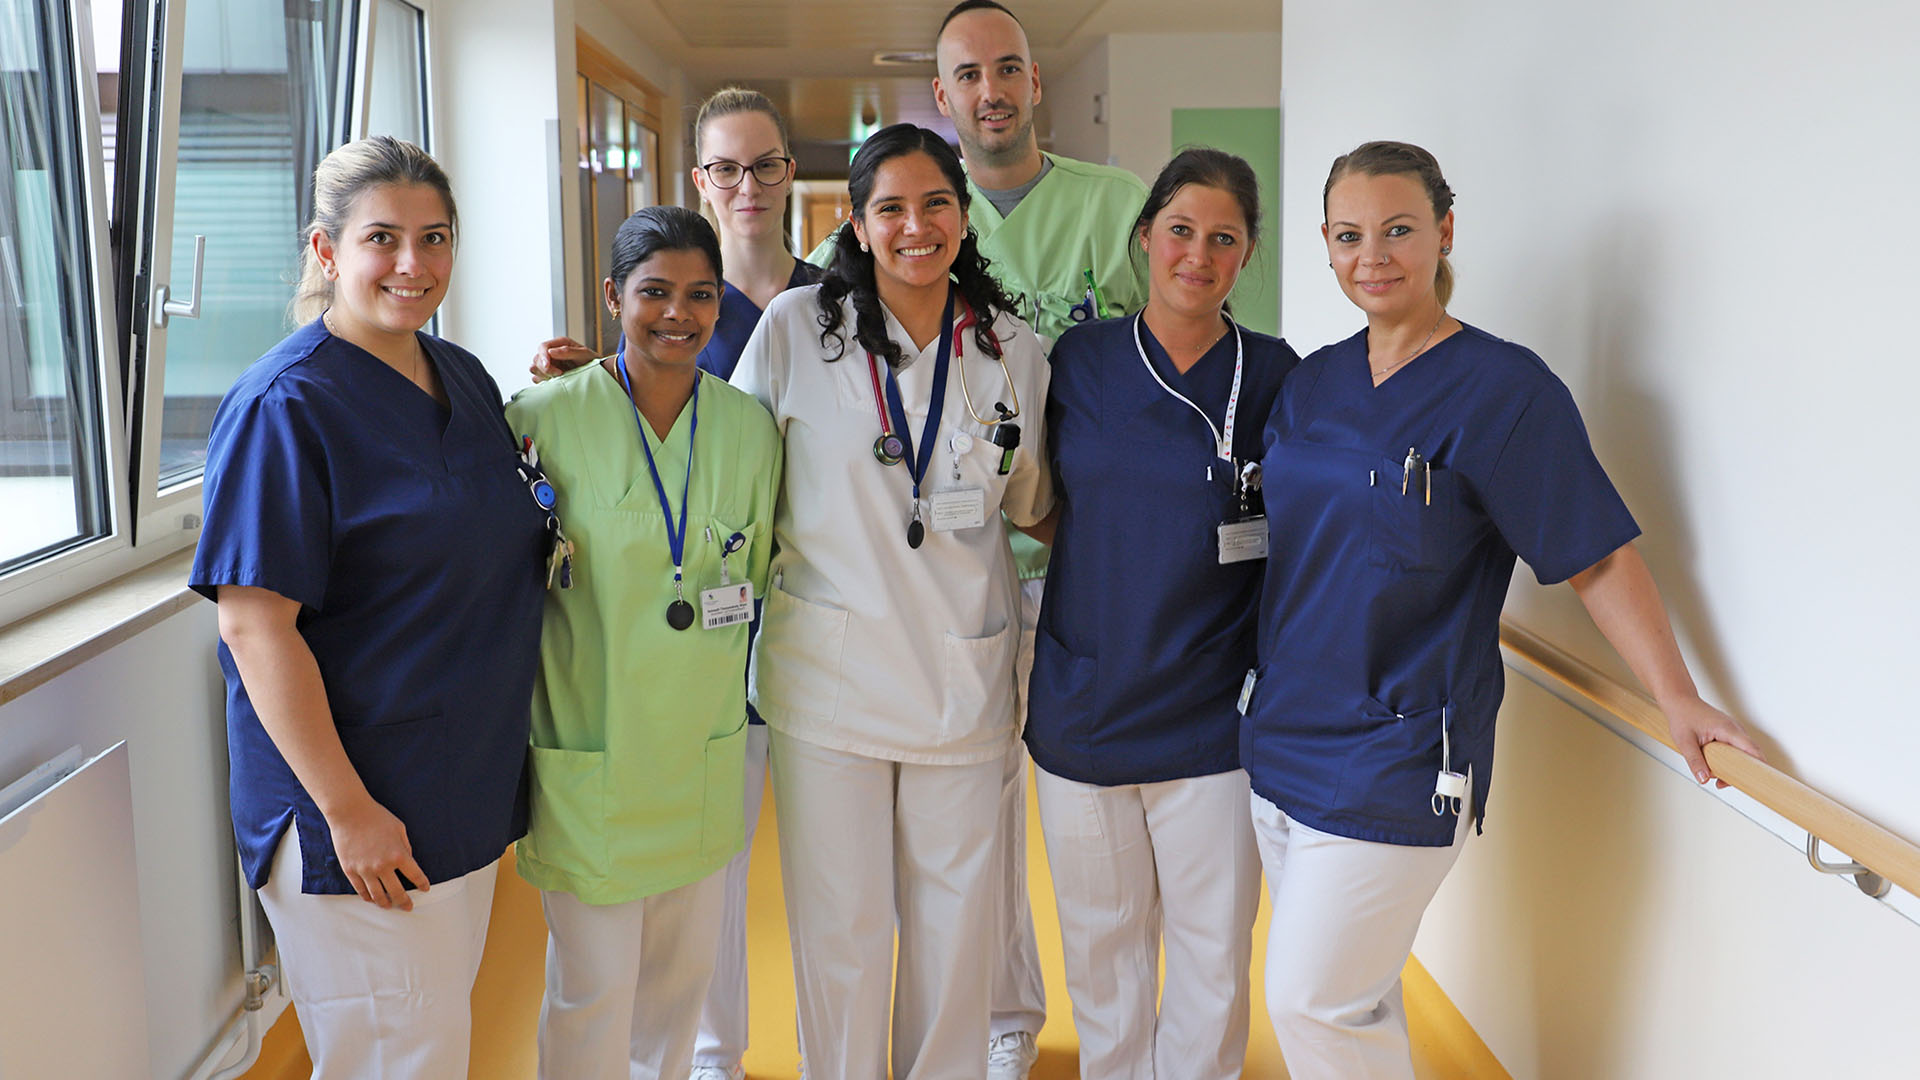 Gruppenfoto von sechs Frauen und einem Mann auf einem Krankenhausflur, alle tragen Dienstkleidung des Krankenhauses.